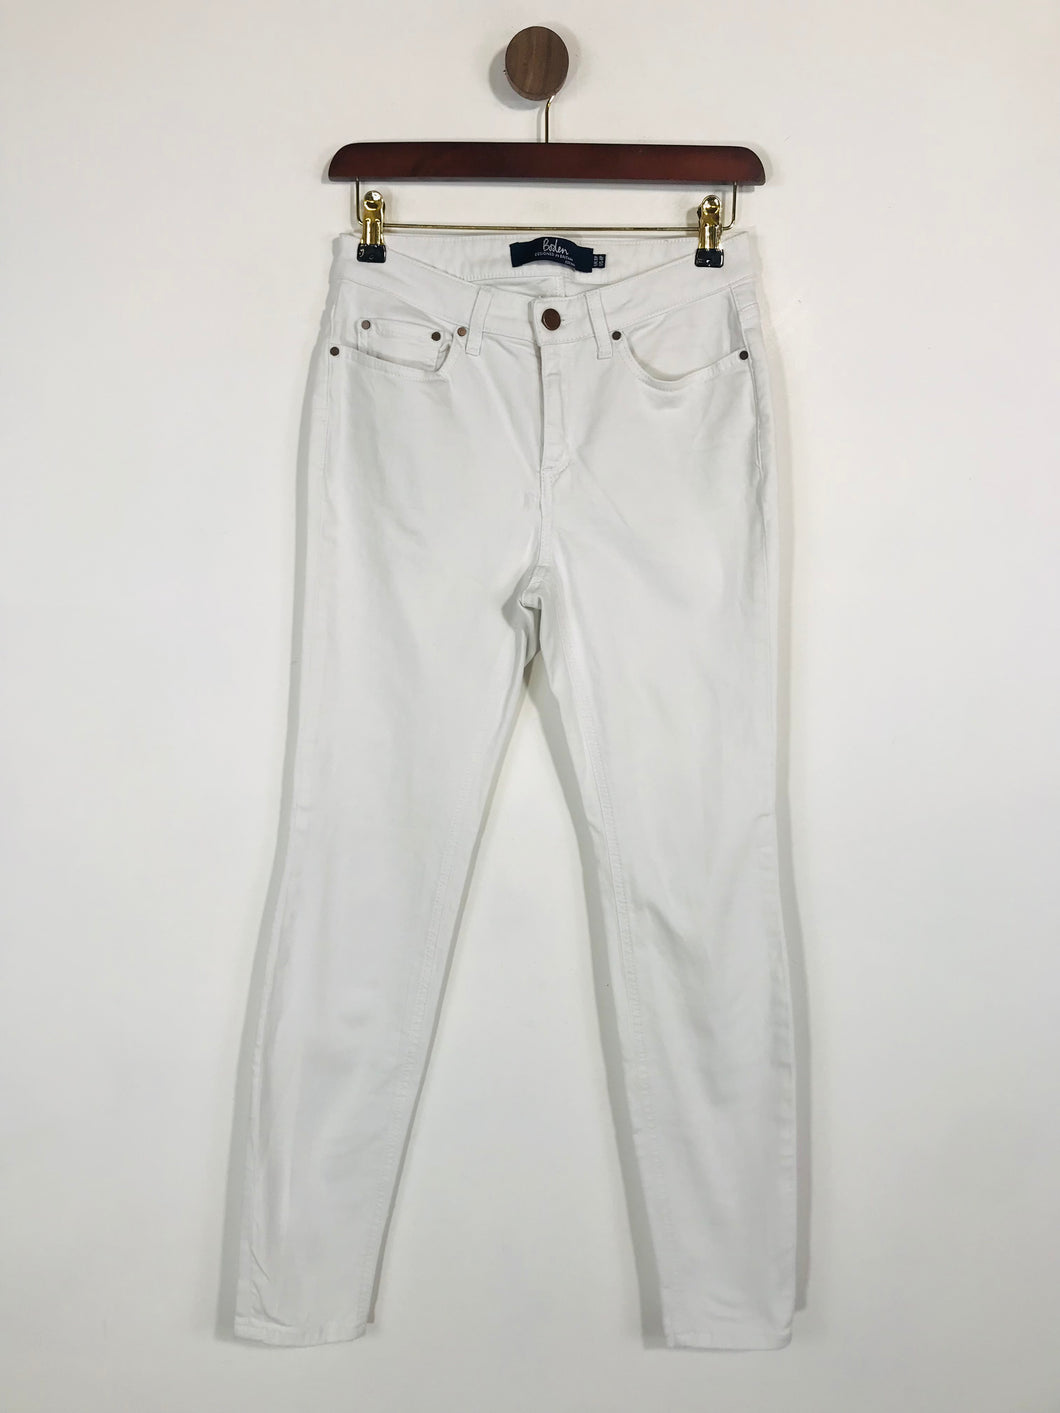 Boden Women's Skinny Jeans | UK8 | White